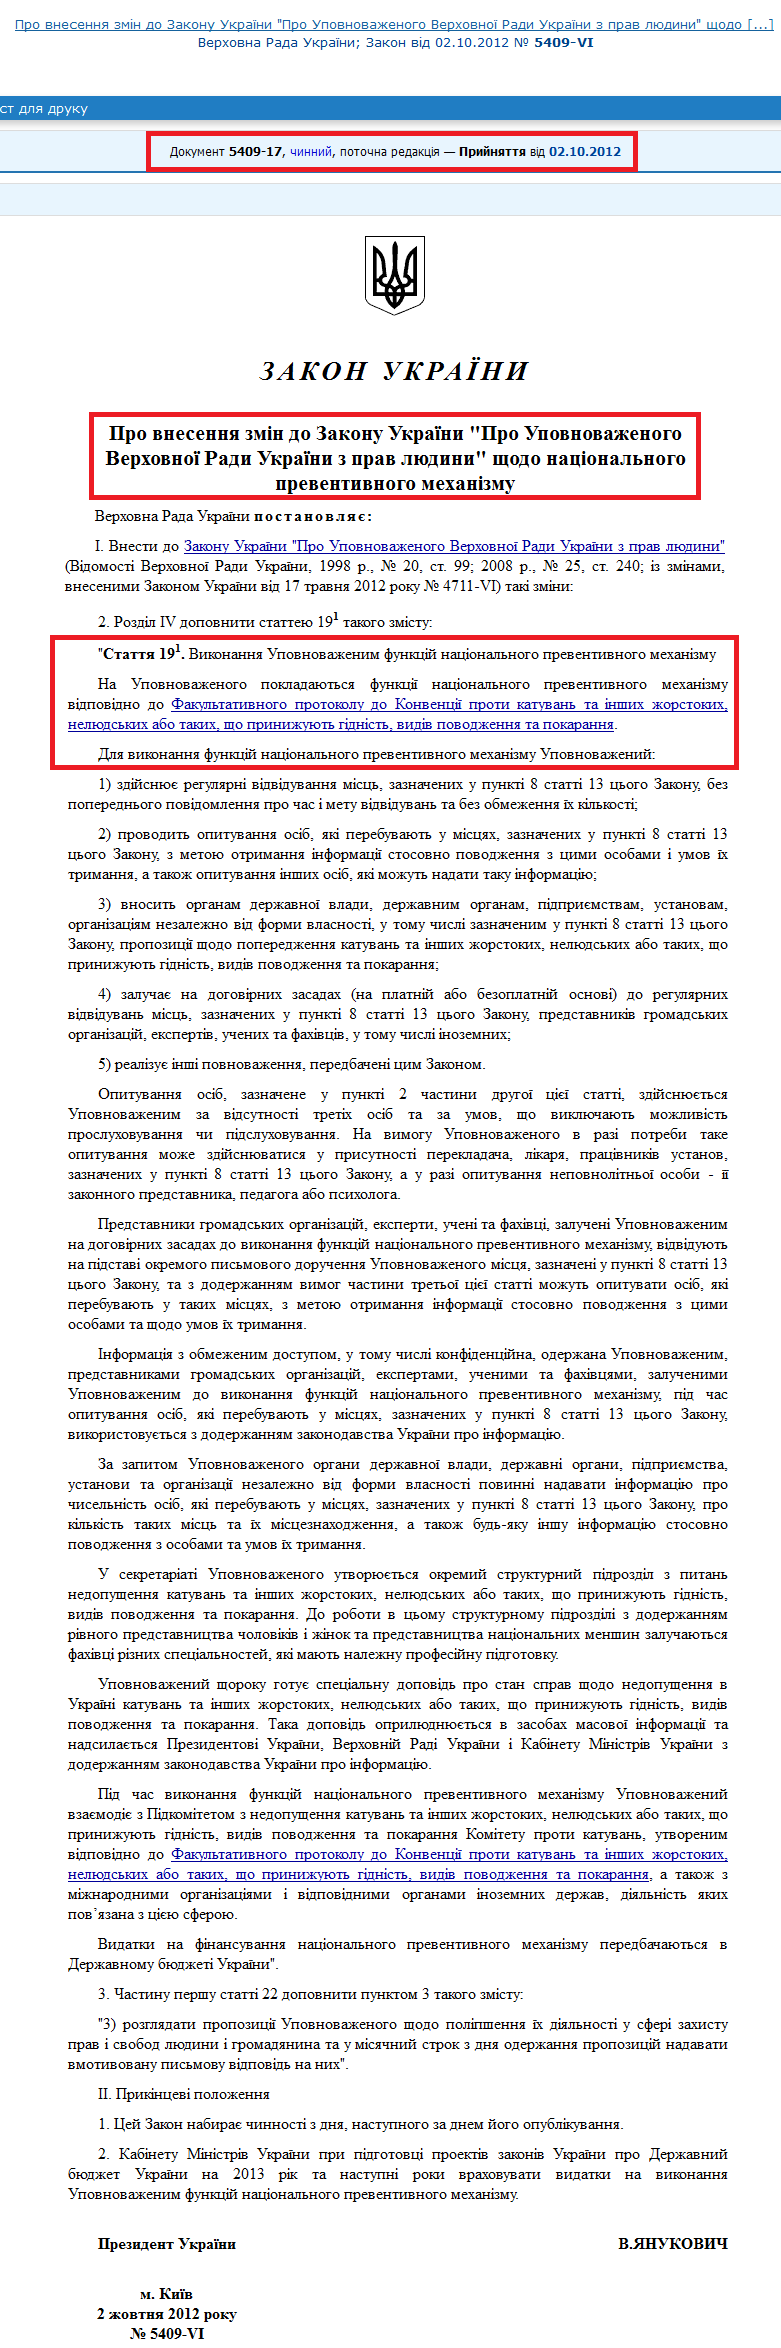 http://zakon2.rada.gov.ua/laws/show/5409-17